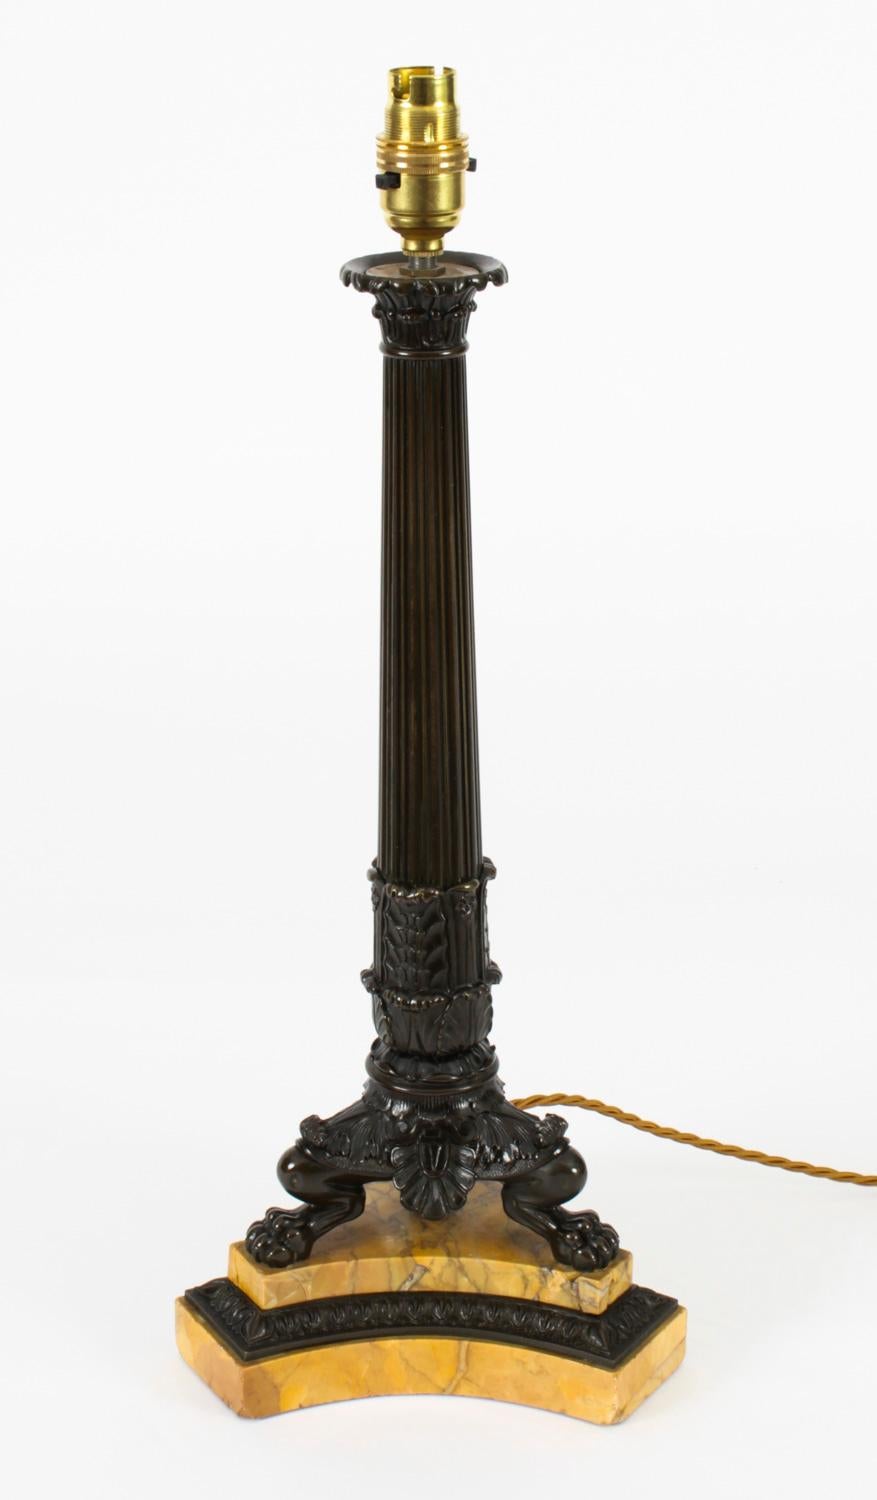 Une élégante lampe de table Empire français en bronze et marbre, datant d'environ 1820.

Le chandelier, transformé plus tard en lampe, présente un chapiteau en forme d'ancanthe, une colonne effilée cannelée reposant sur des pieds griffes et une